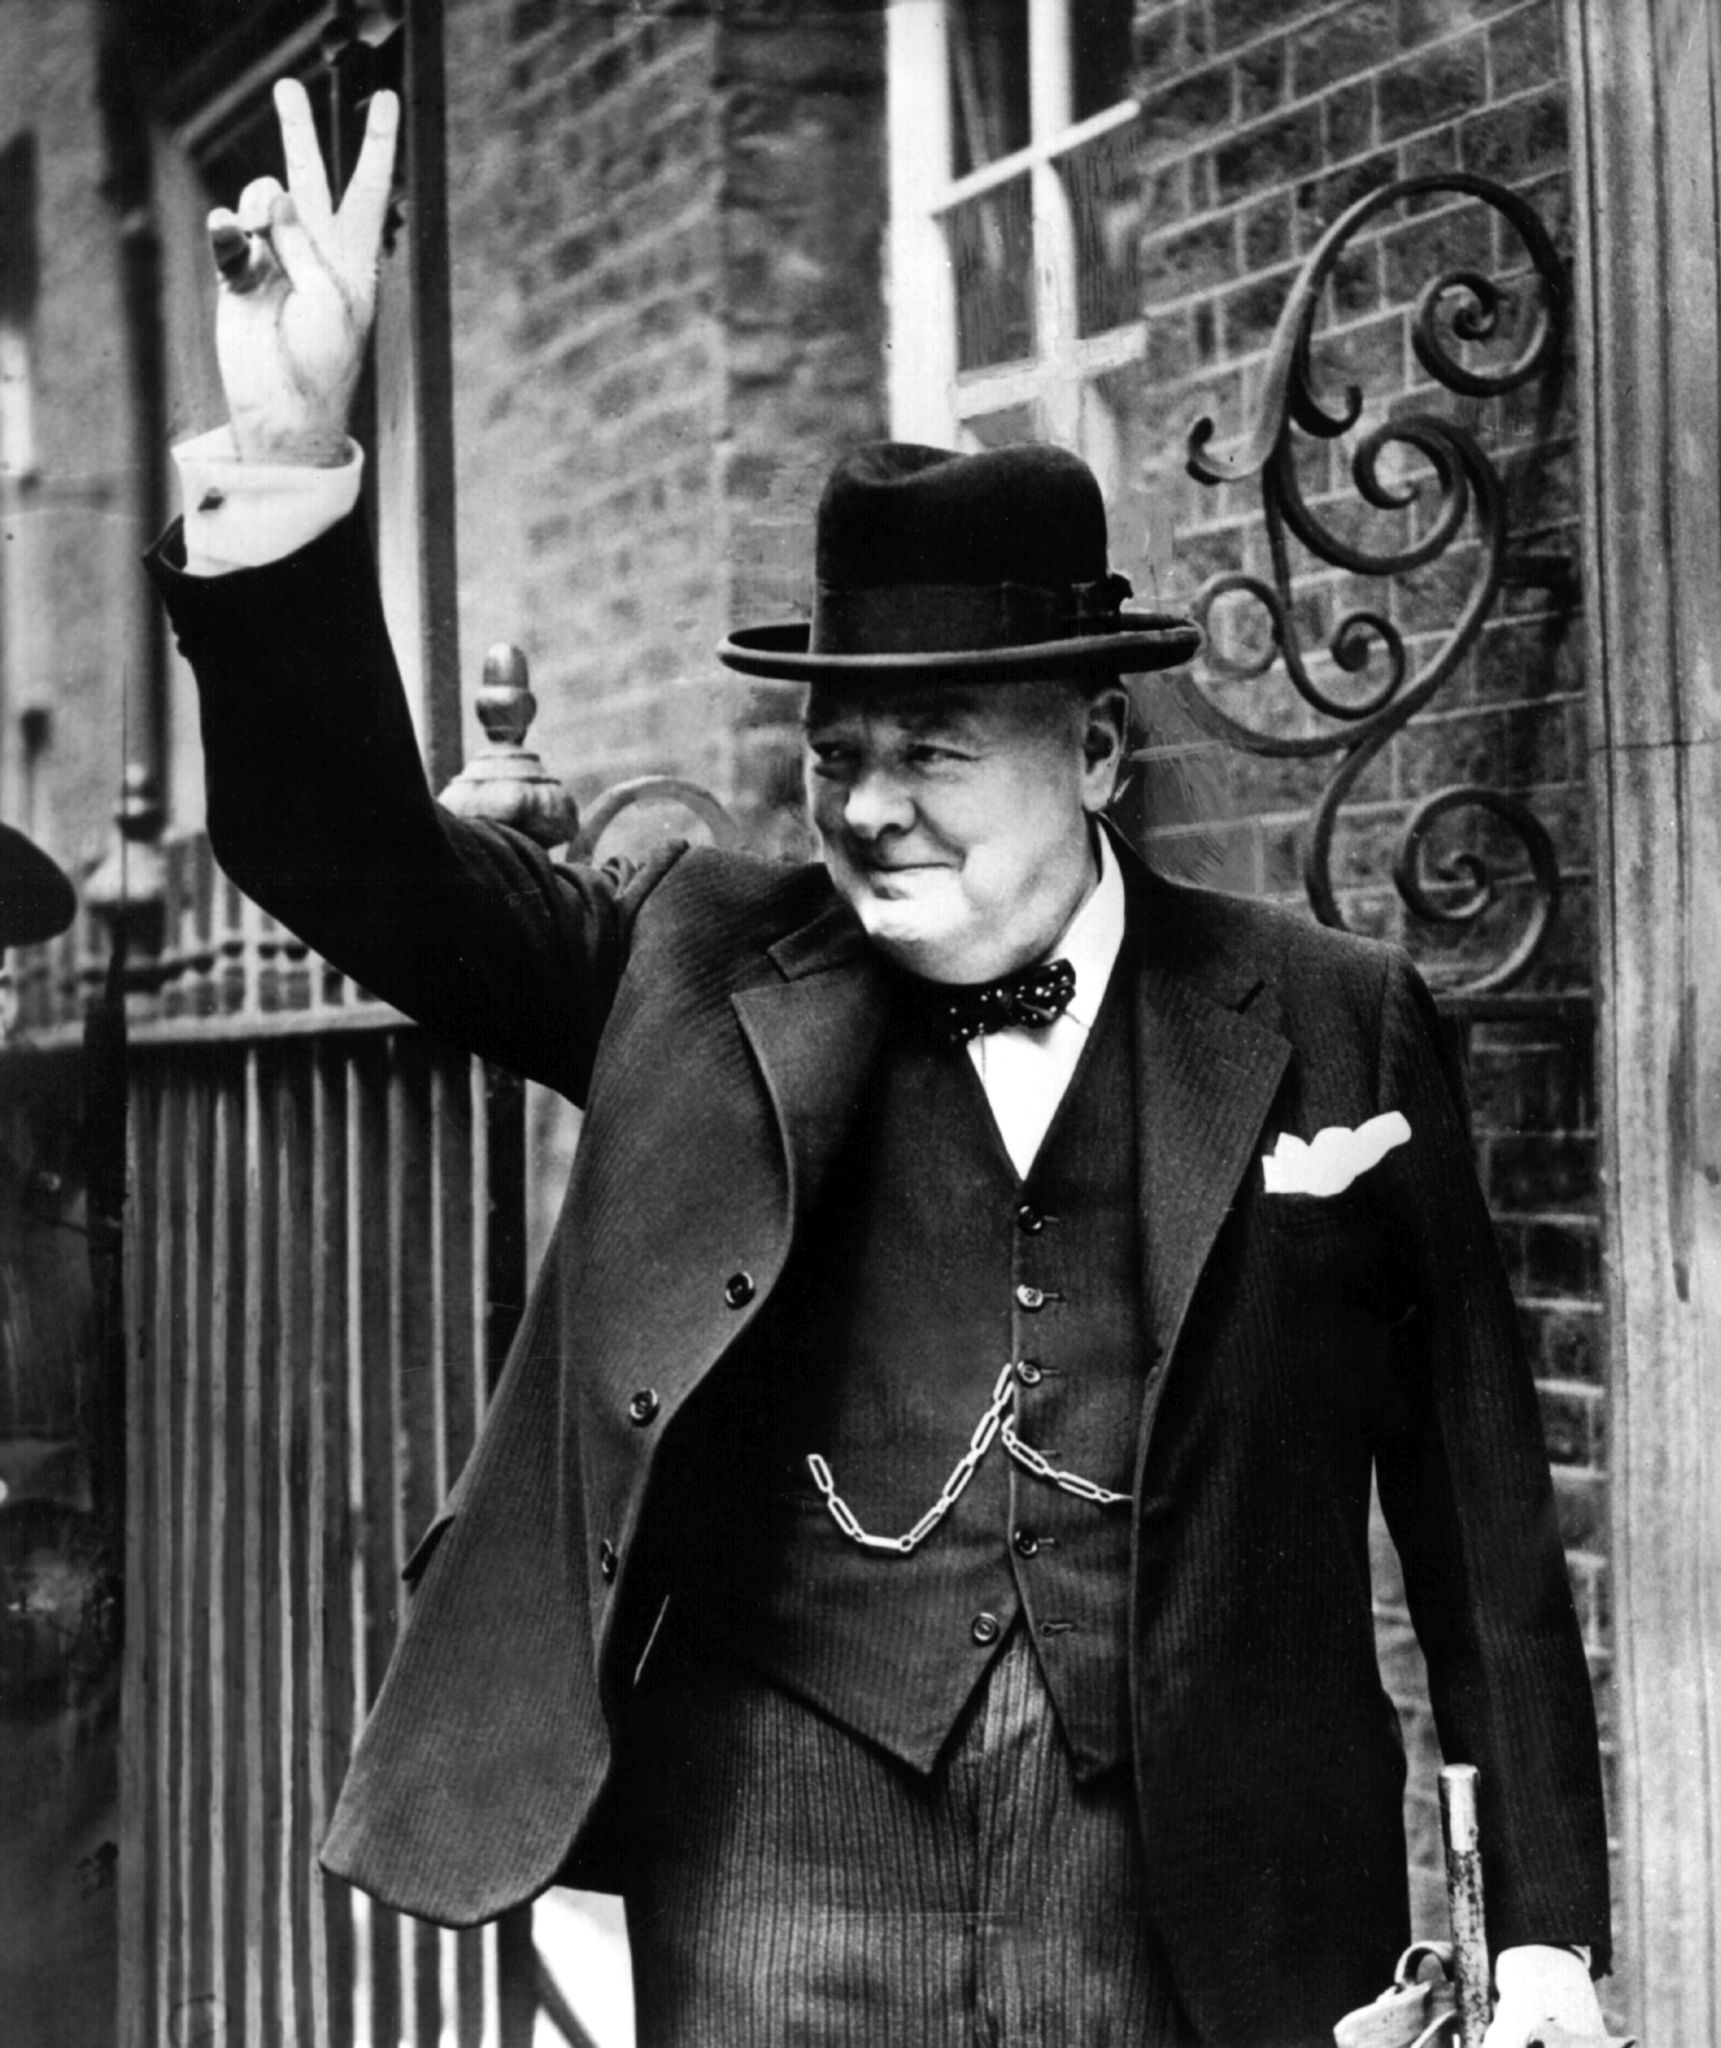 ARCHIVO - El primer ministro británico Winston Churchill muestra la V de victoria en 1943 frente a Downing Street 10, la residencia del jefe de Gobierno en Londres. Foto: Handout/dpa